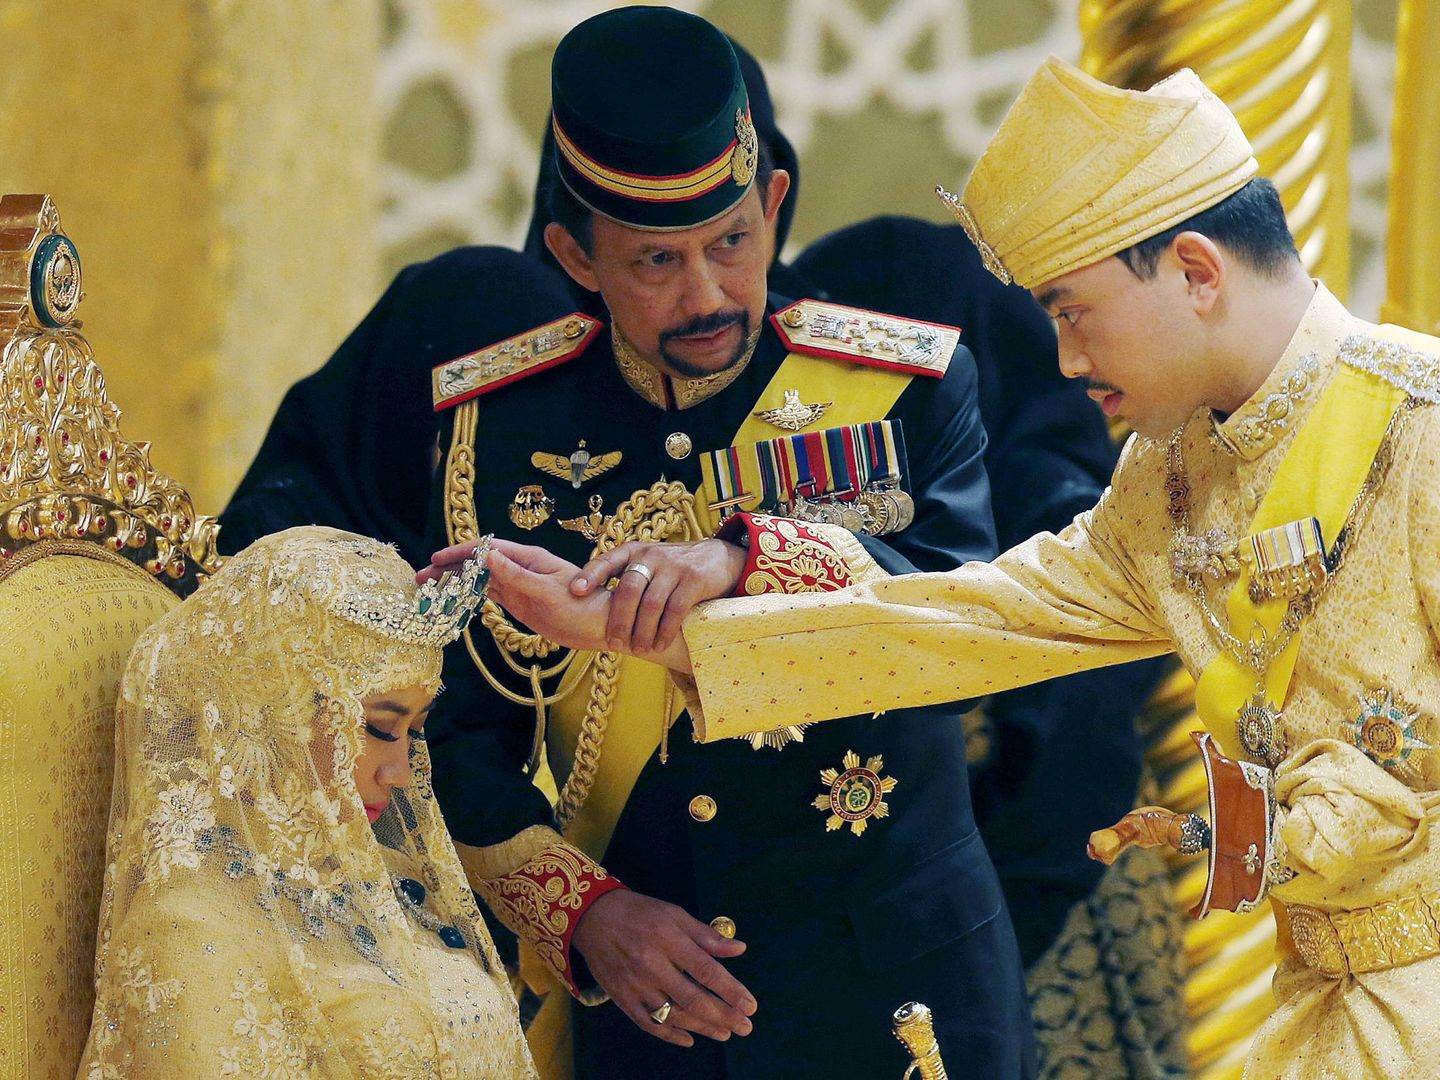 Boda del hijo del sultán de Brunéi. (Reuters)